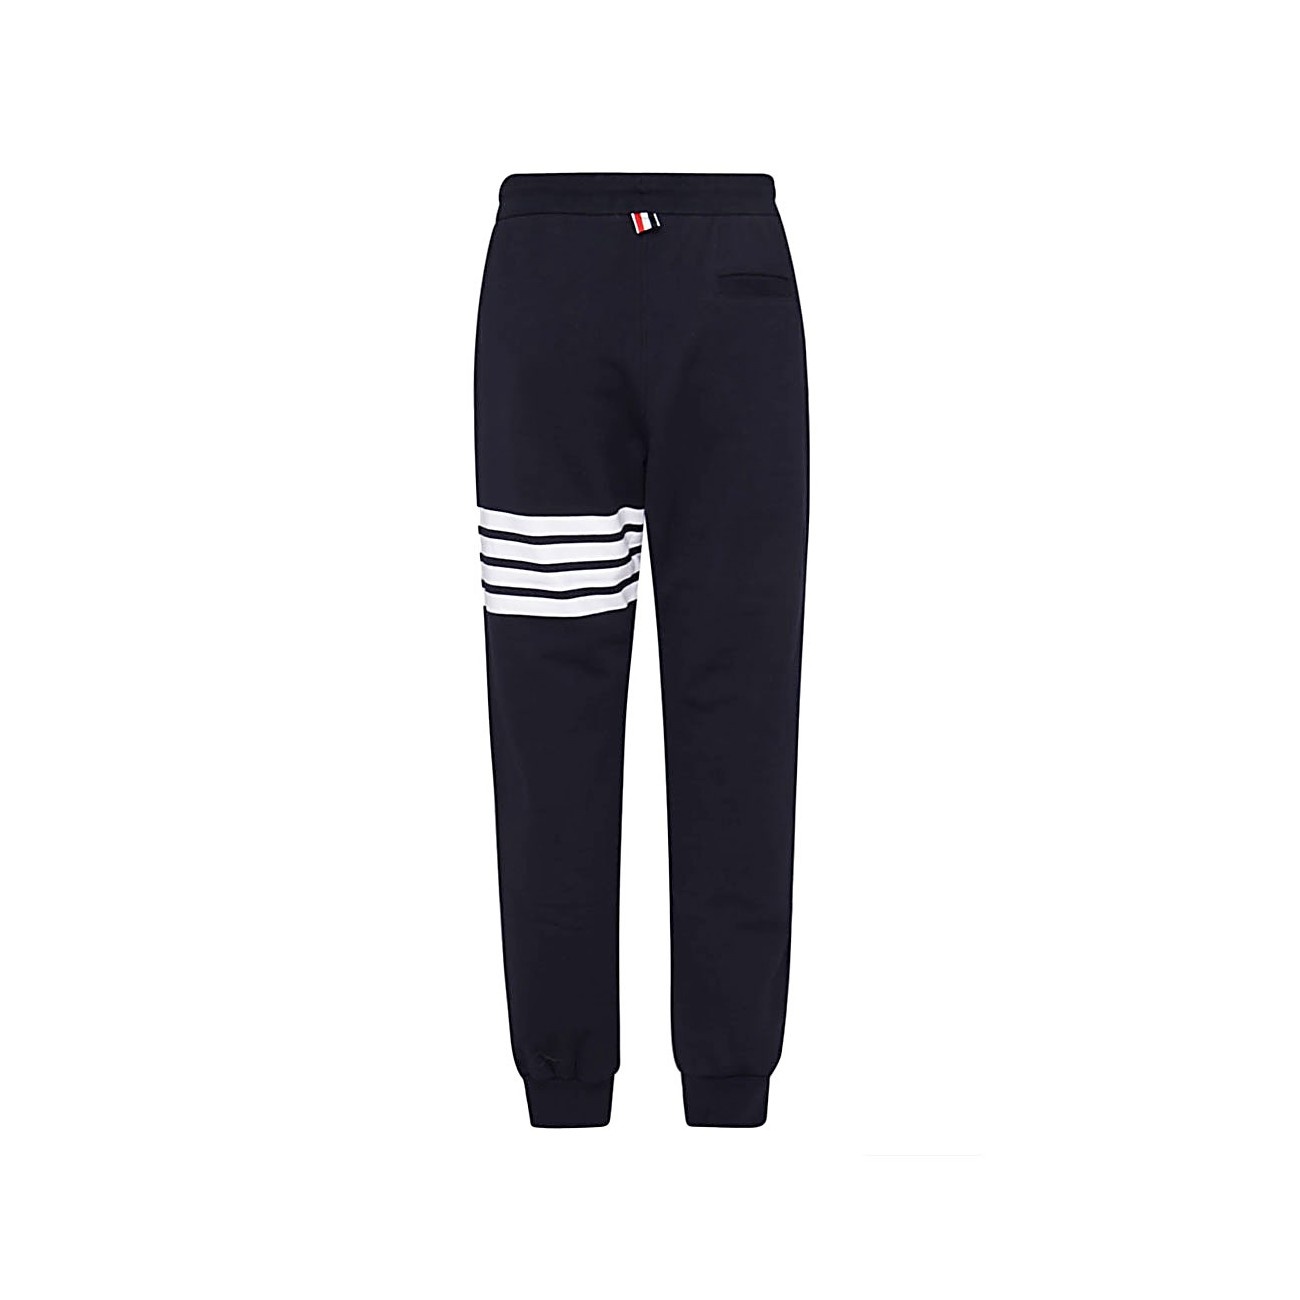 navy blue cotton pants - 2